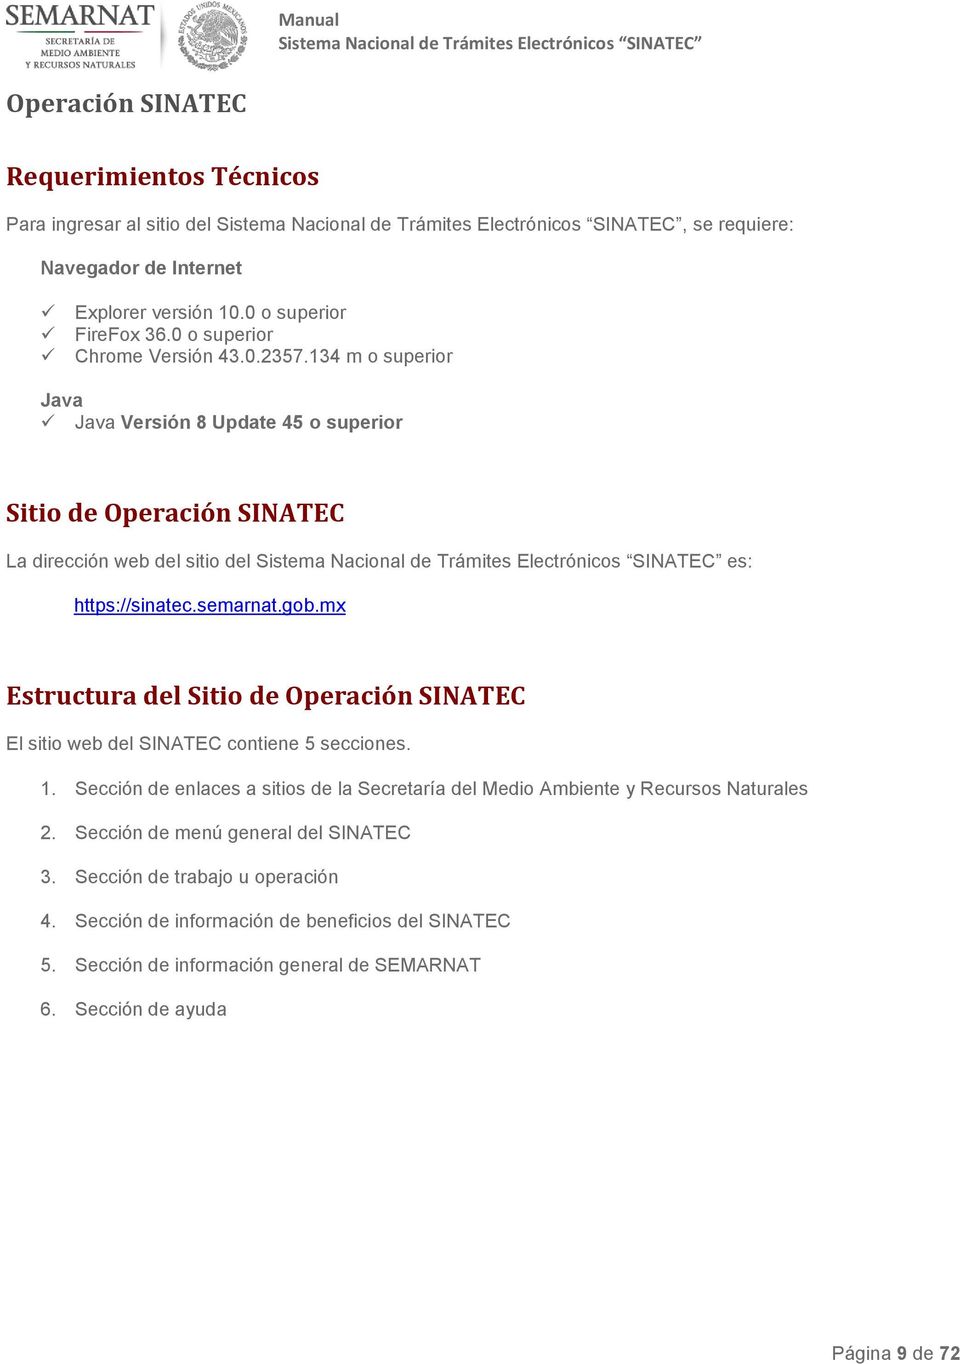 mx Estructura del Sitio de Operación SINATEC El sitio web del SINATEC contiene 5 secciones. 1.